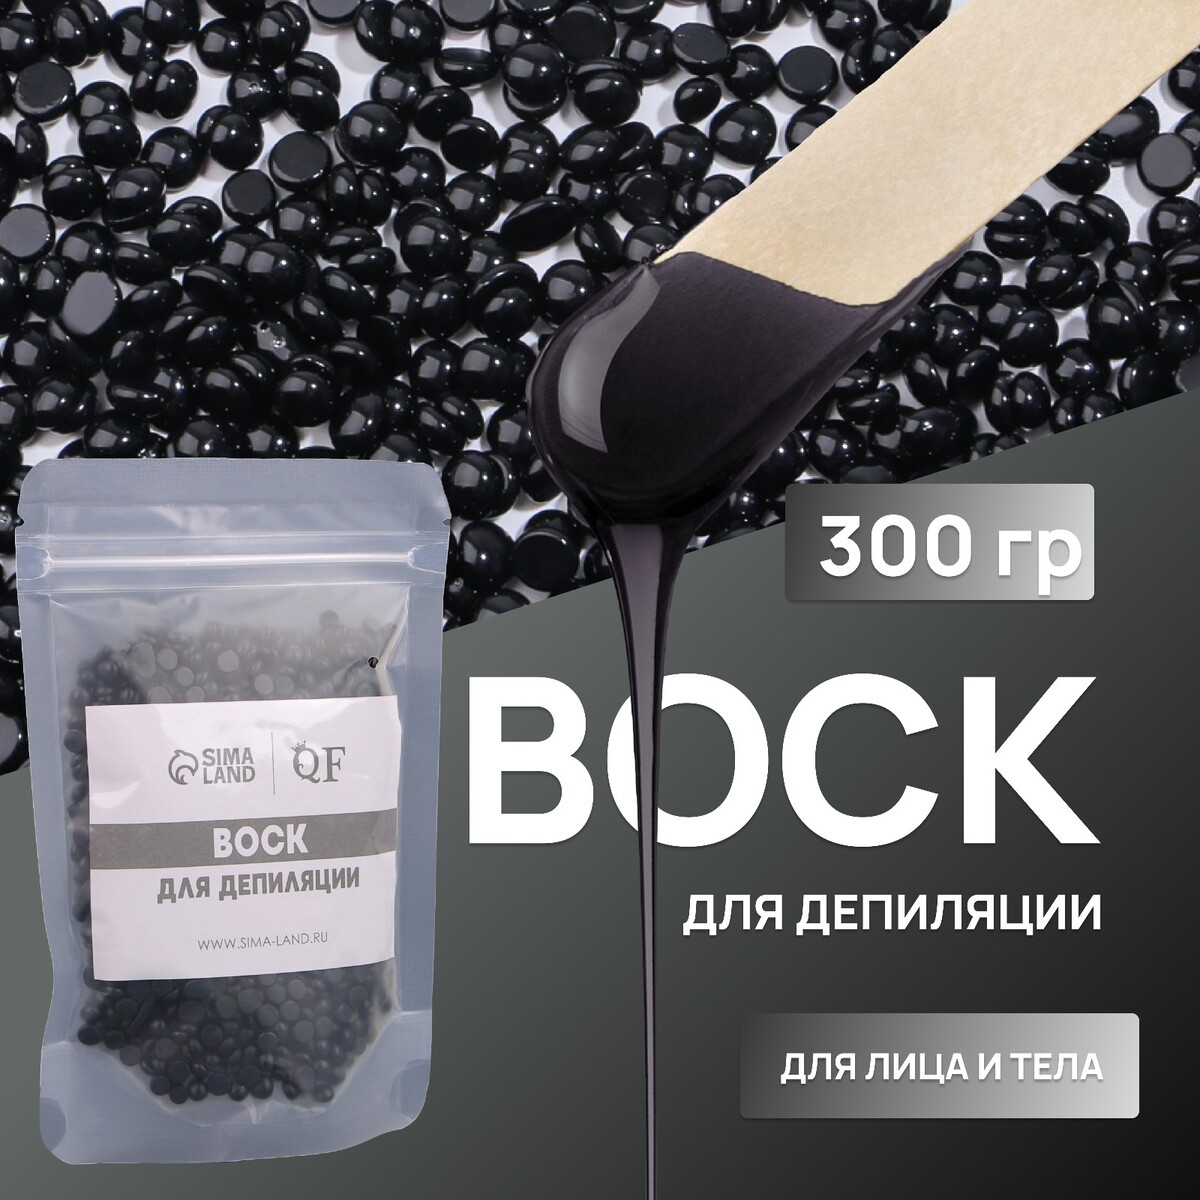 Воск для депиляции, пленочный, в гранулах, 300 гр, цвет черный